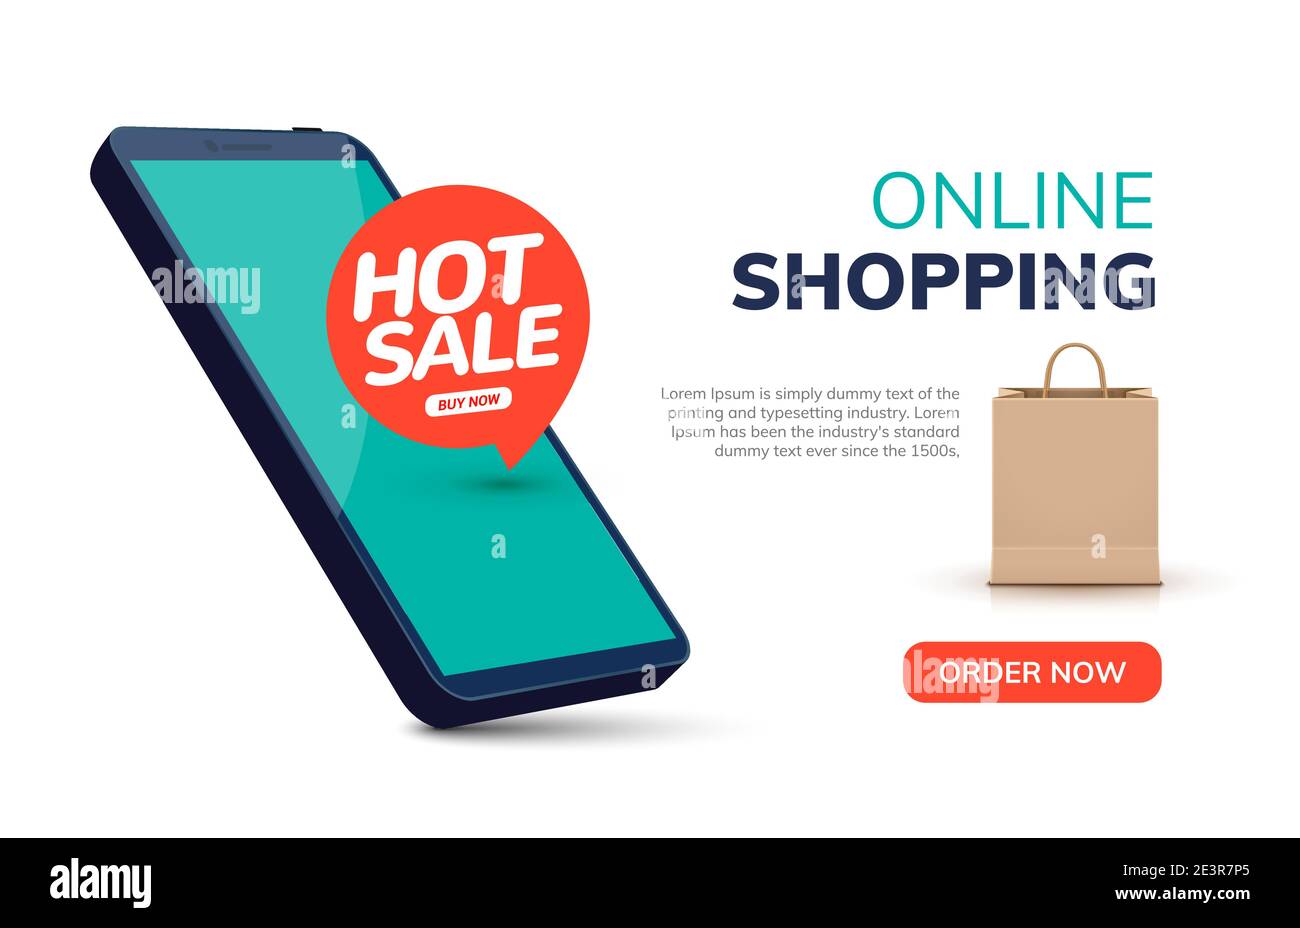 Eenheid klassiek Komkommer Online mobile shop ecommerce order. Entertainment vector online shopping  application illustration banner Stock Vector Image & Art - Alamy